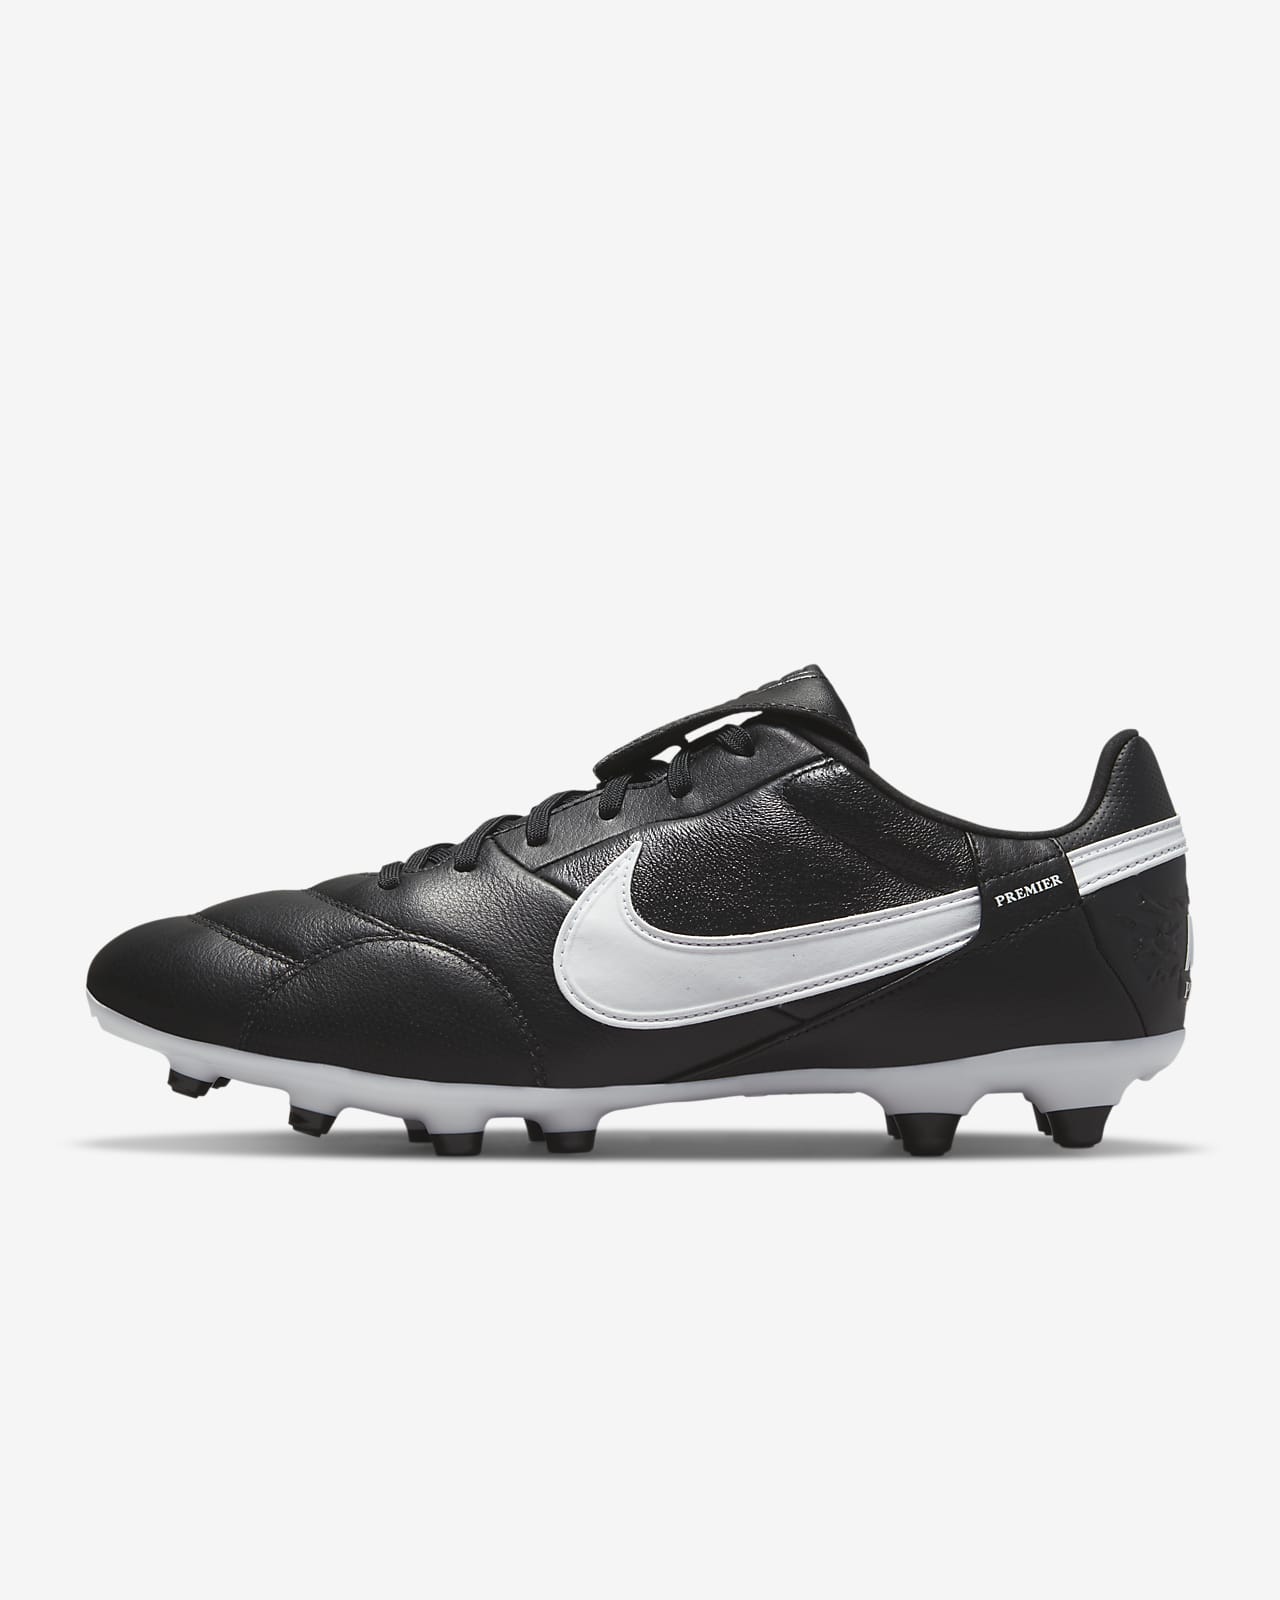 Ποδοσφαιρικά παπούτσια χαμηλού προφίλ για φυσικές σκληρές επιφάνειες NikePremier 3